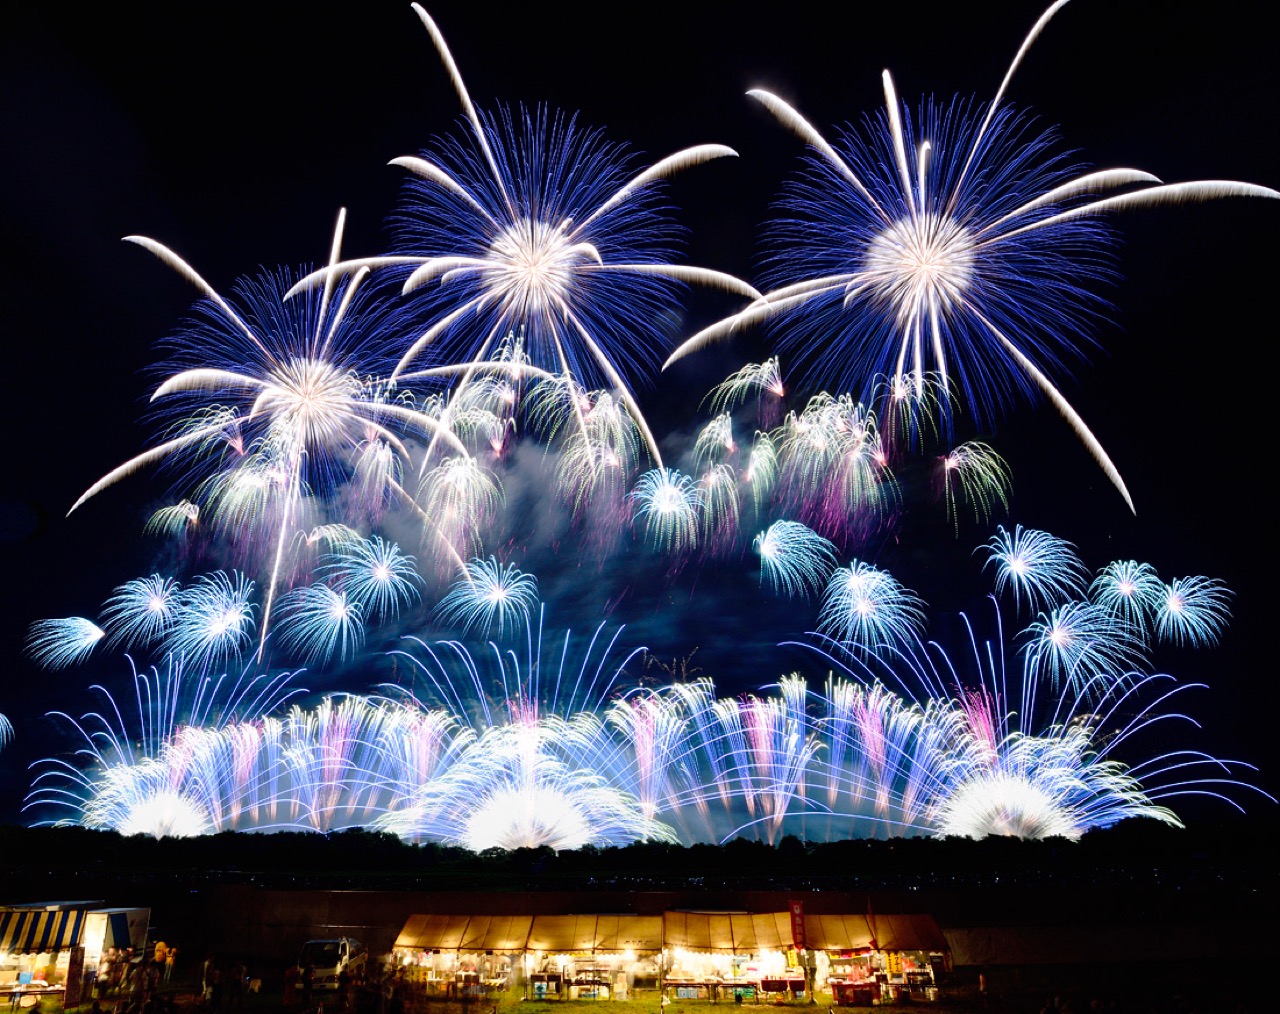 お台場で東京花火大祭18が開催決定 約12 000発 子どもがプログラミングした花火も打ち上げへ とよすと